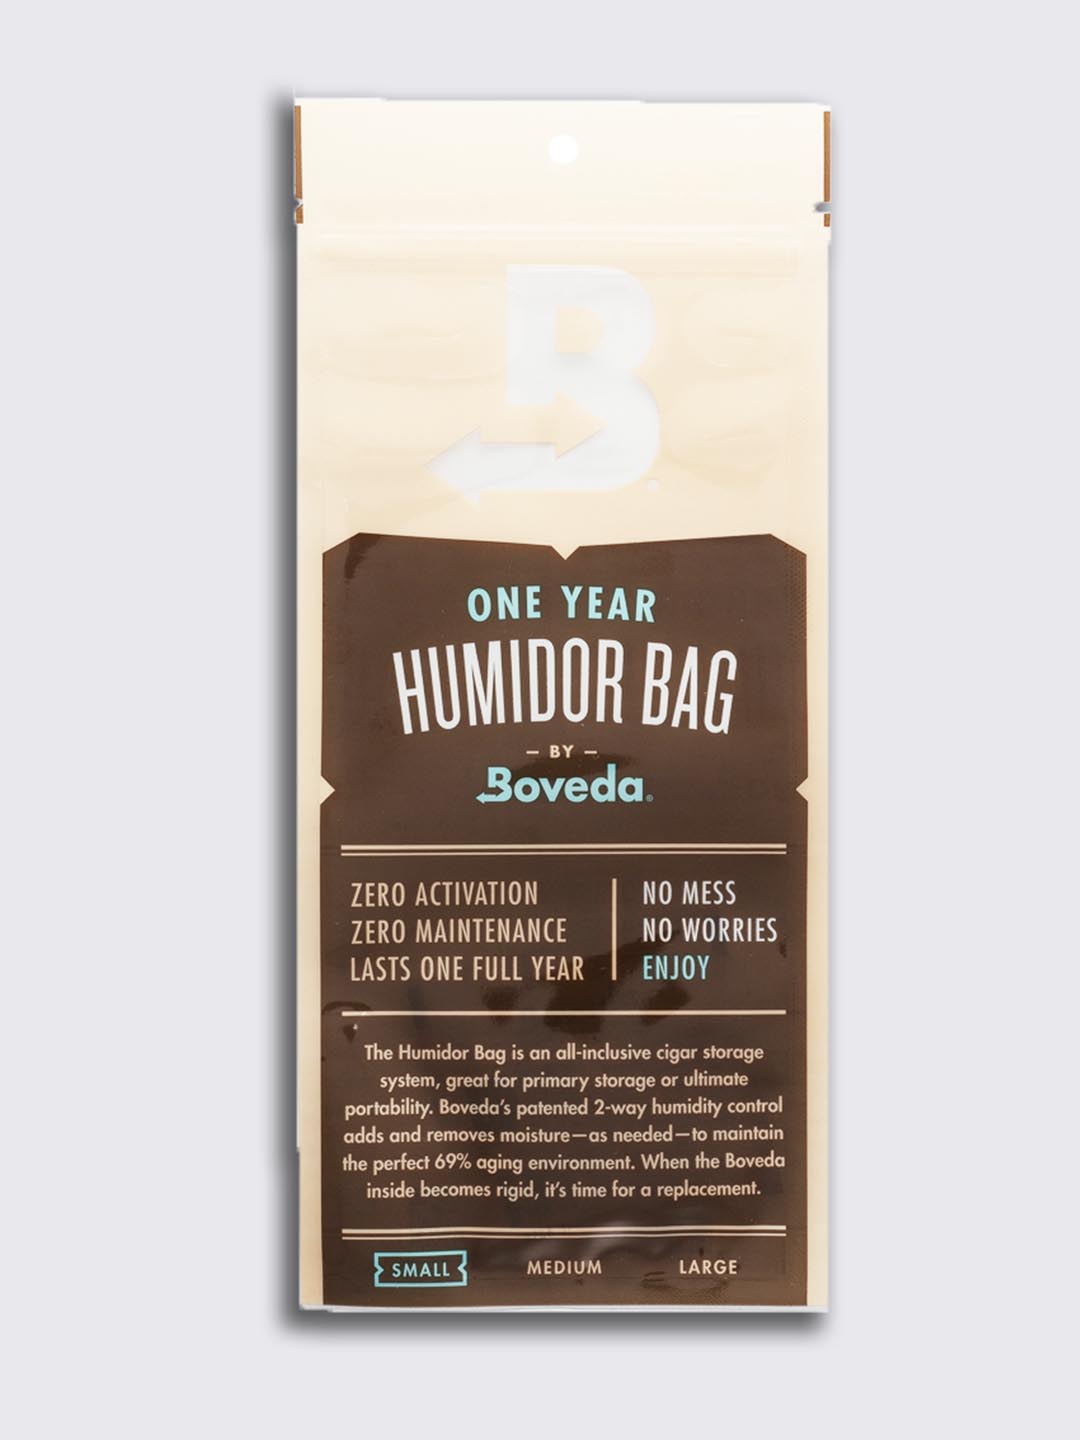 Opinions on this humidor bag? : r/cigars